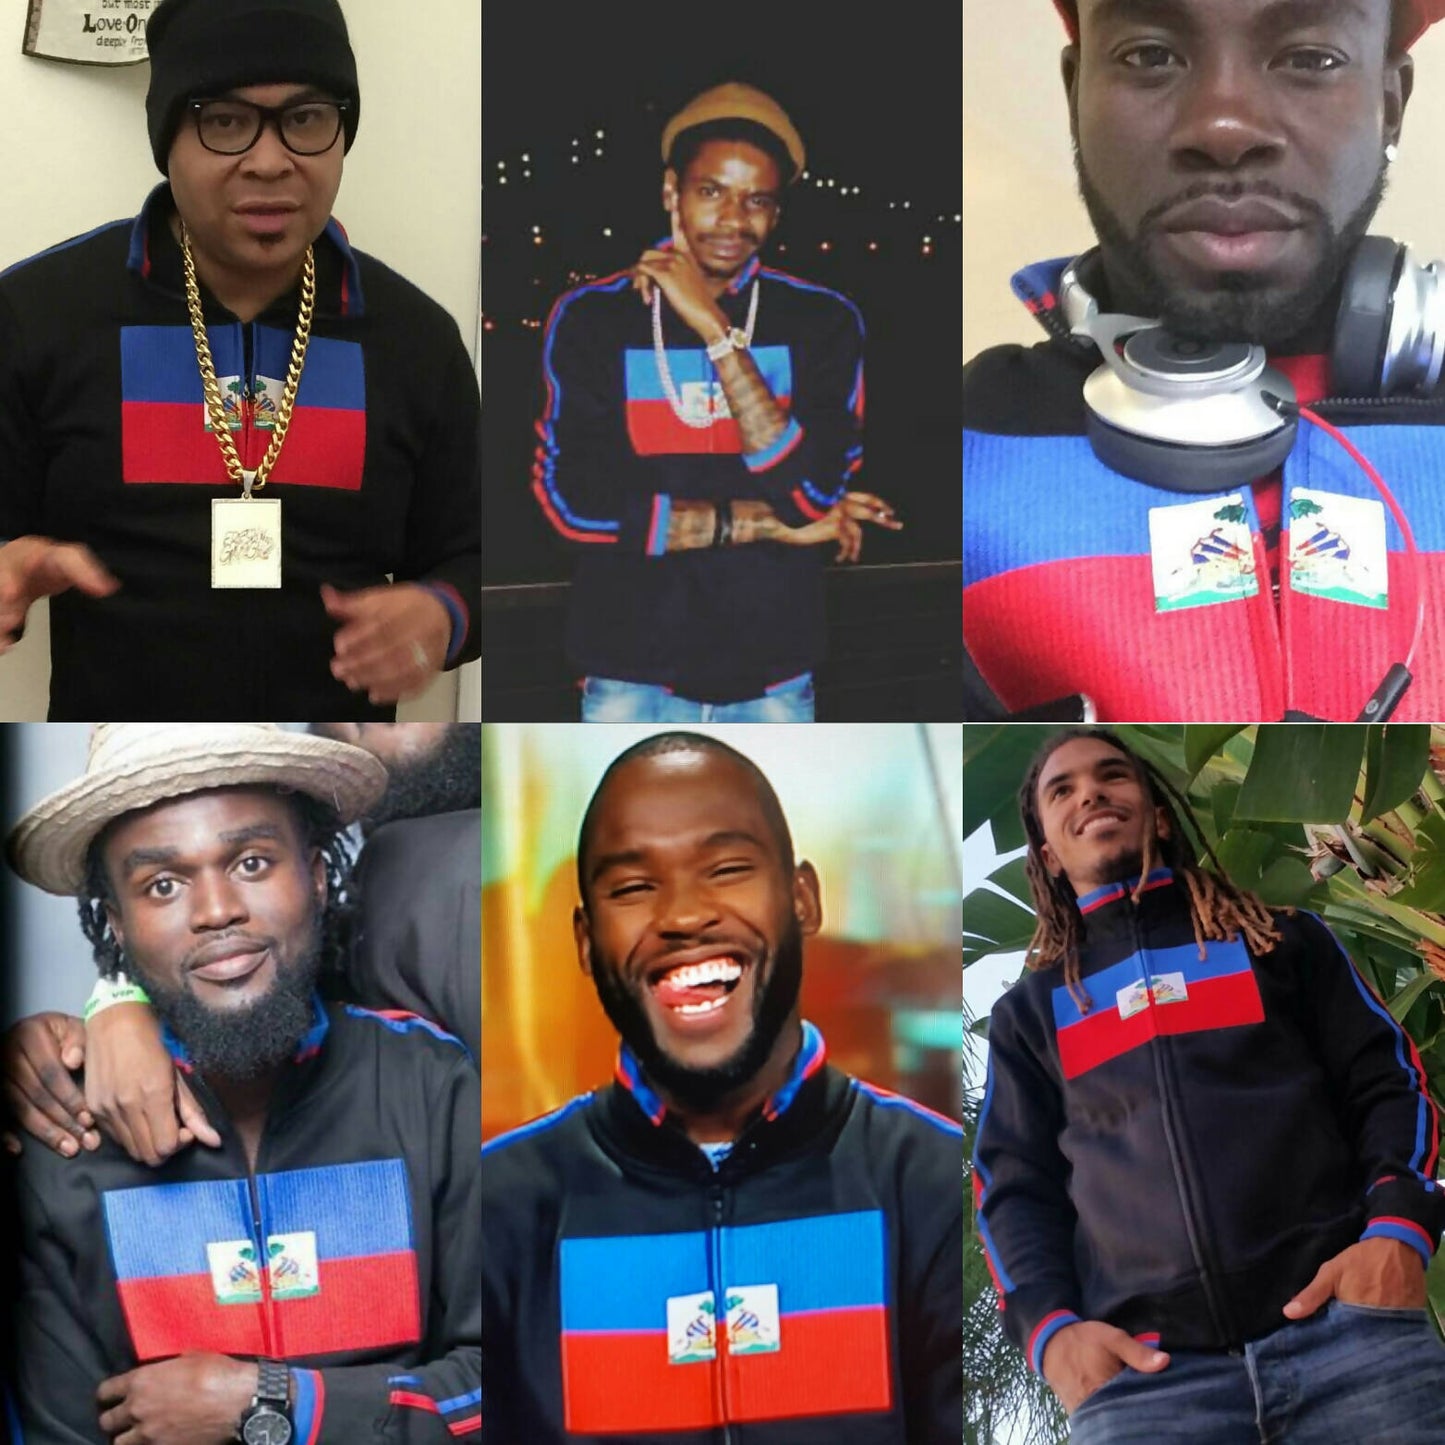 Haiti Collage Men